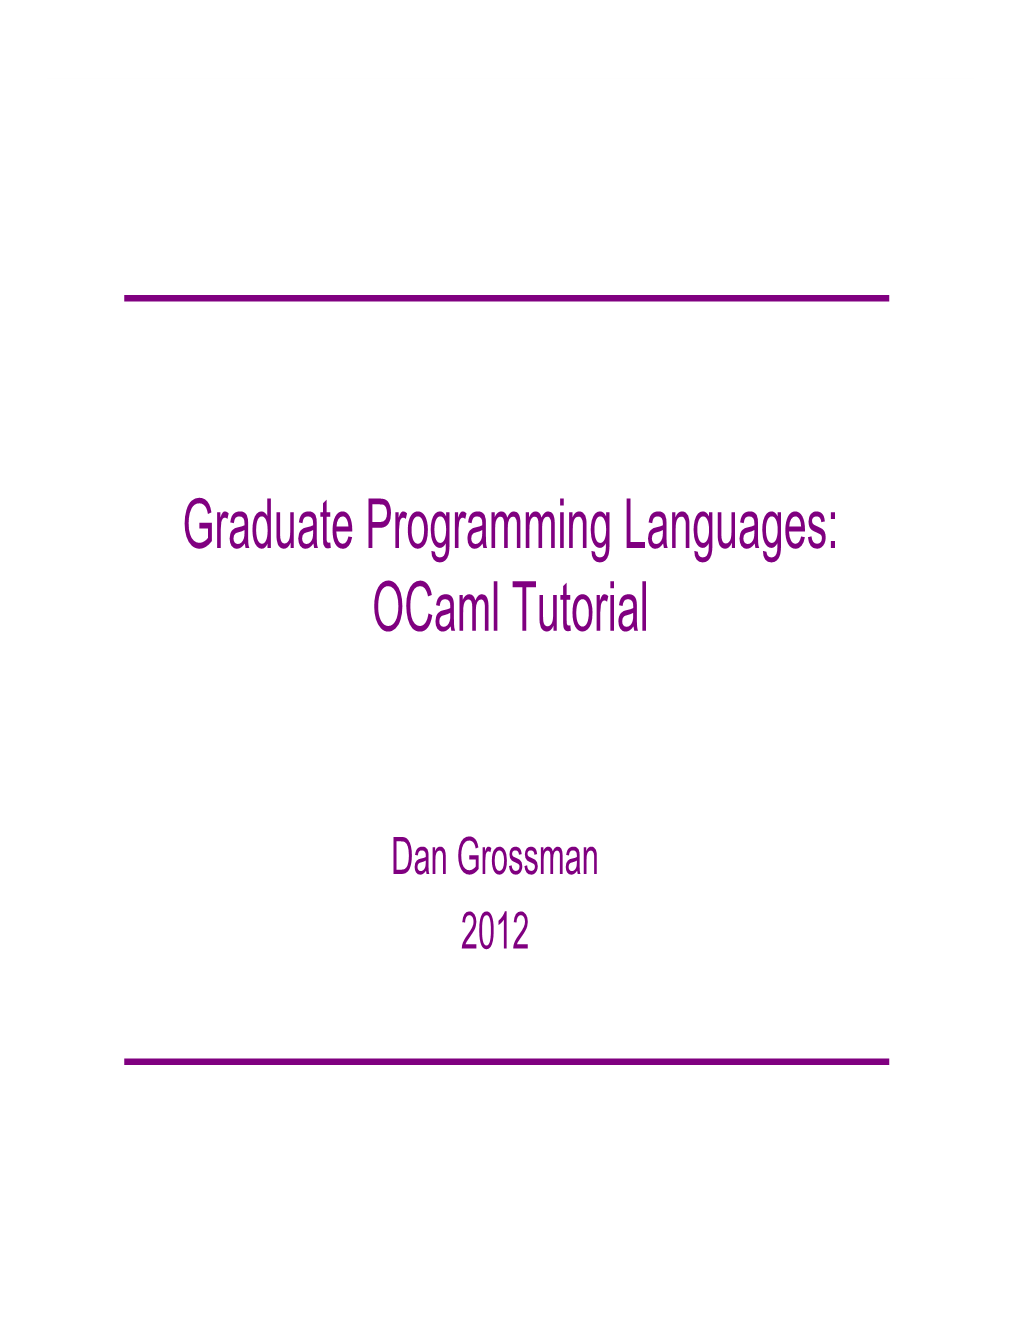 Graduate Programming Languages: Ocaml Tutorial